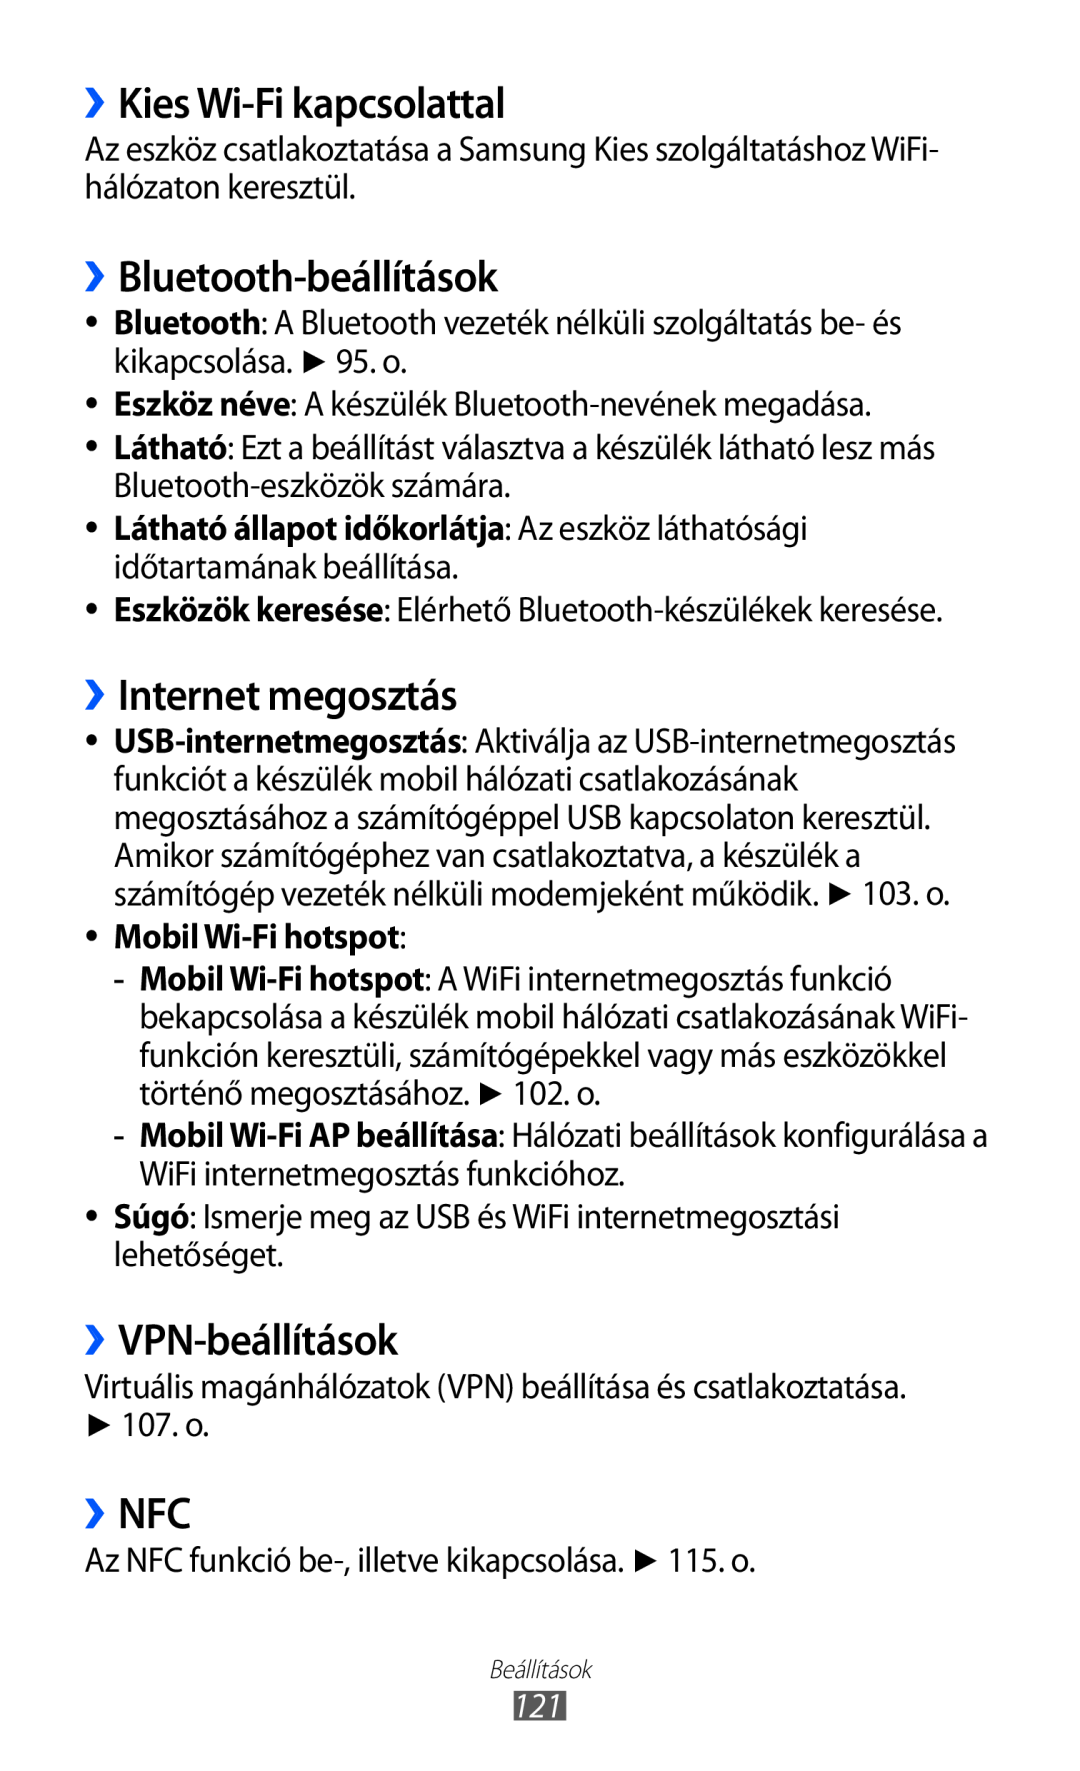 Samsung GT2S6500RWDXEH ››Kies Wi-Fi kapcsolattal, ››Bluetooth-beállítások, ››Internet megosztás, ››VPN-beállítások, ››Nfc 